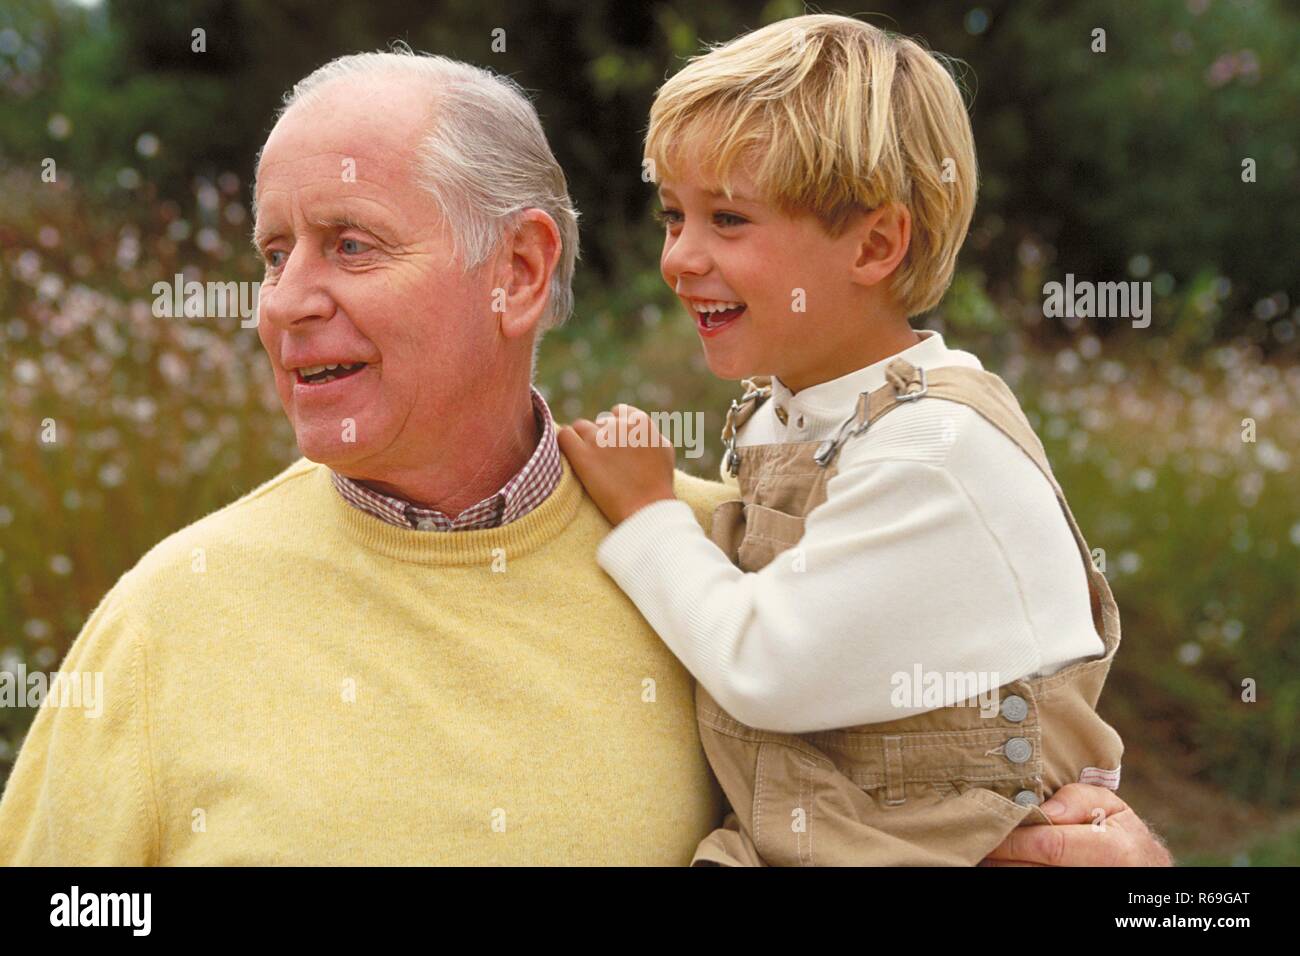 All'aperto, blondr 6 Jahre alter Junge bekleidet mit beiger Latzhose auf dem braccio sciabiche Grossvaters bekleidet mit gelbem Pullover Foto Stock